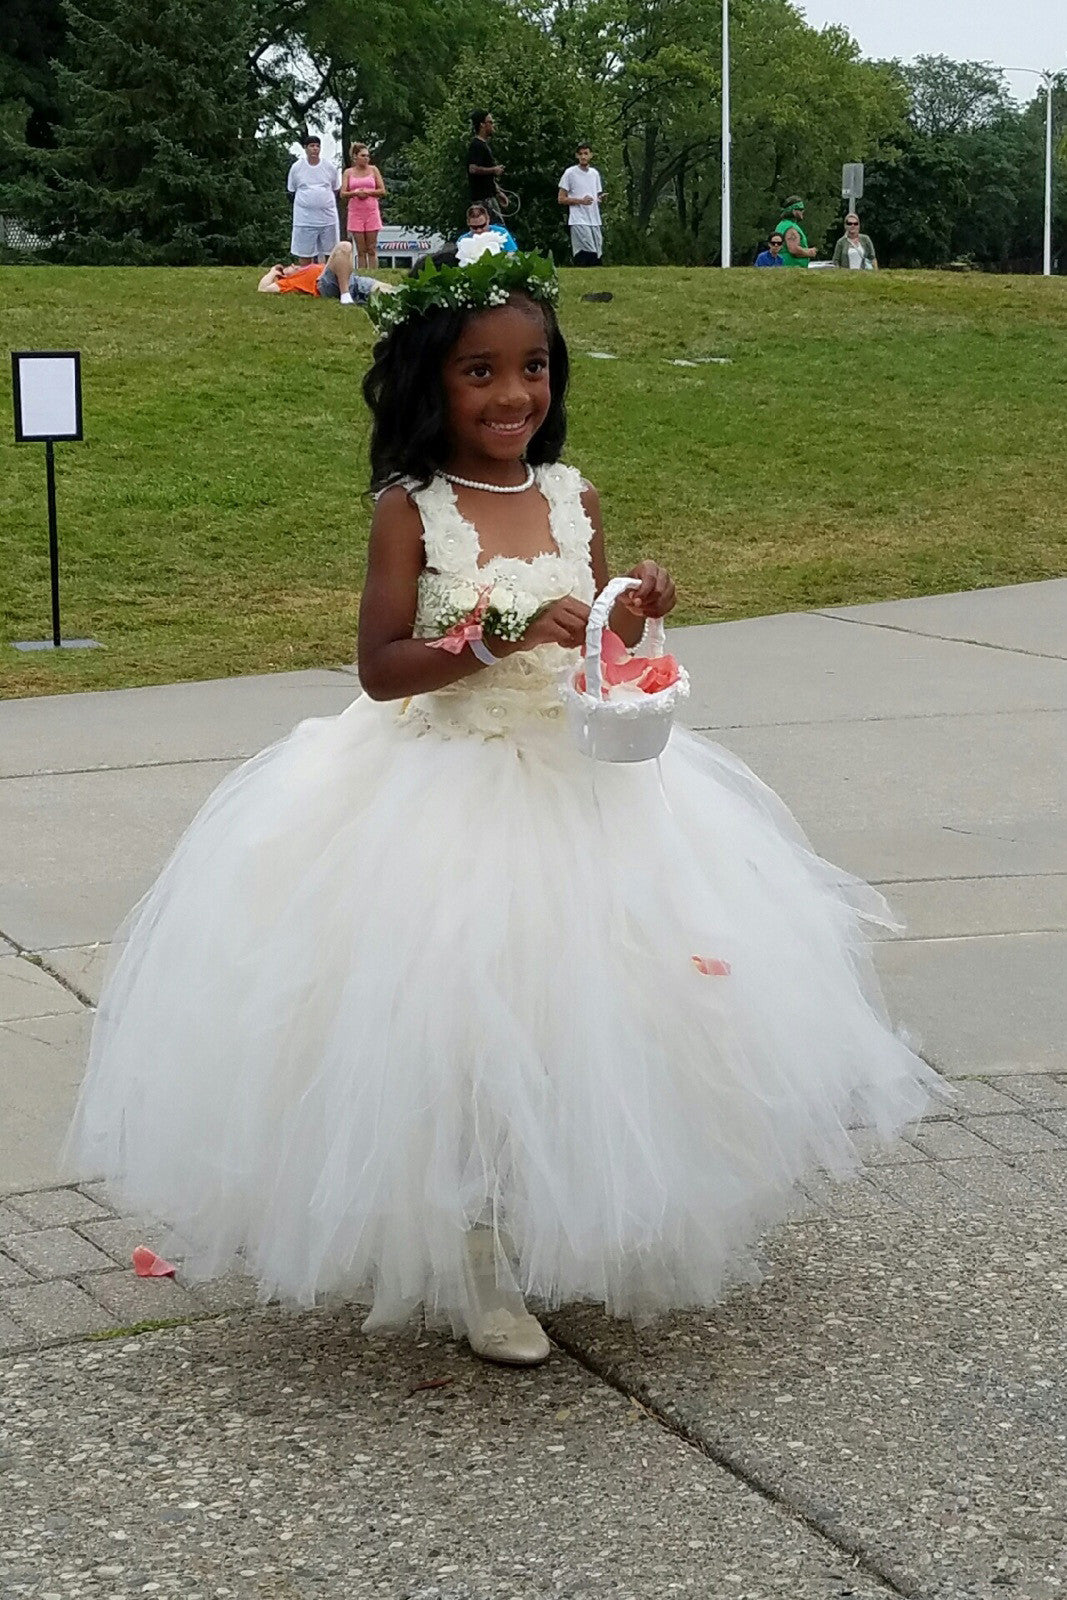 Little Girl White Shiny Wedding Dress Stock Photo 1459161197 | Shutterstock